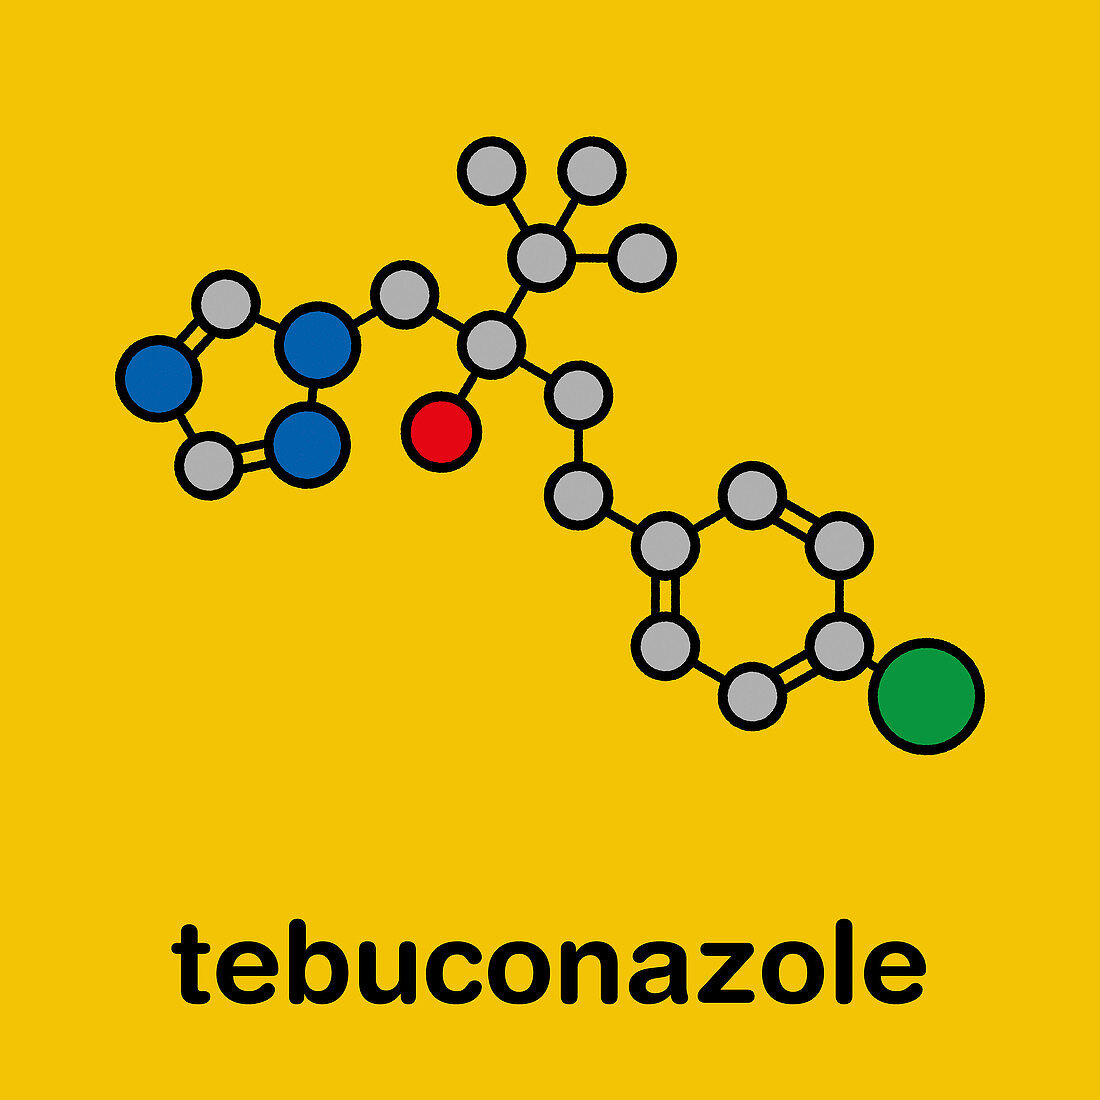 Tebuconazole fungicide molecule